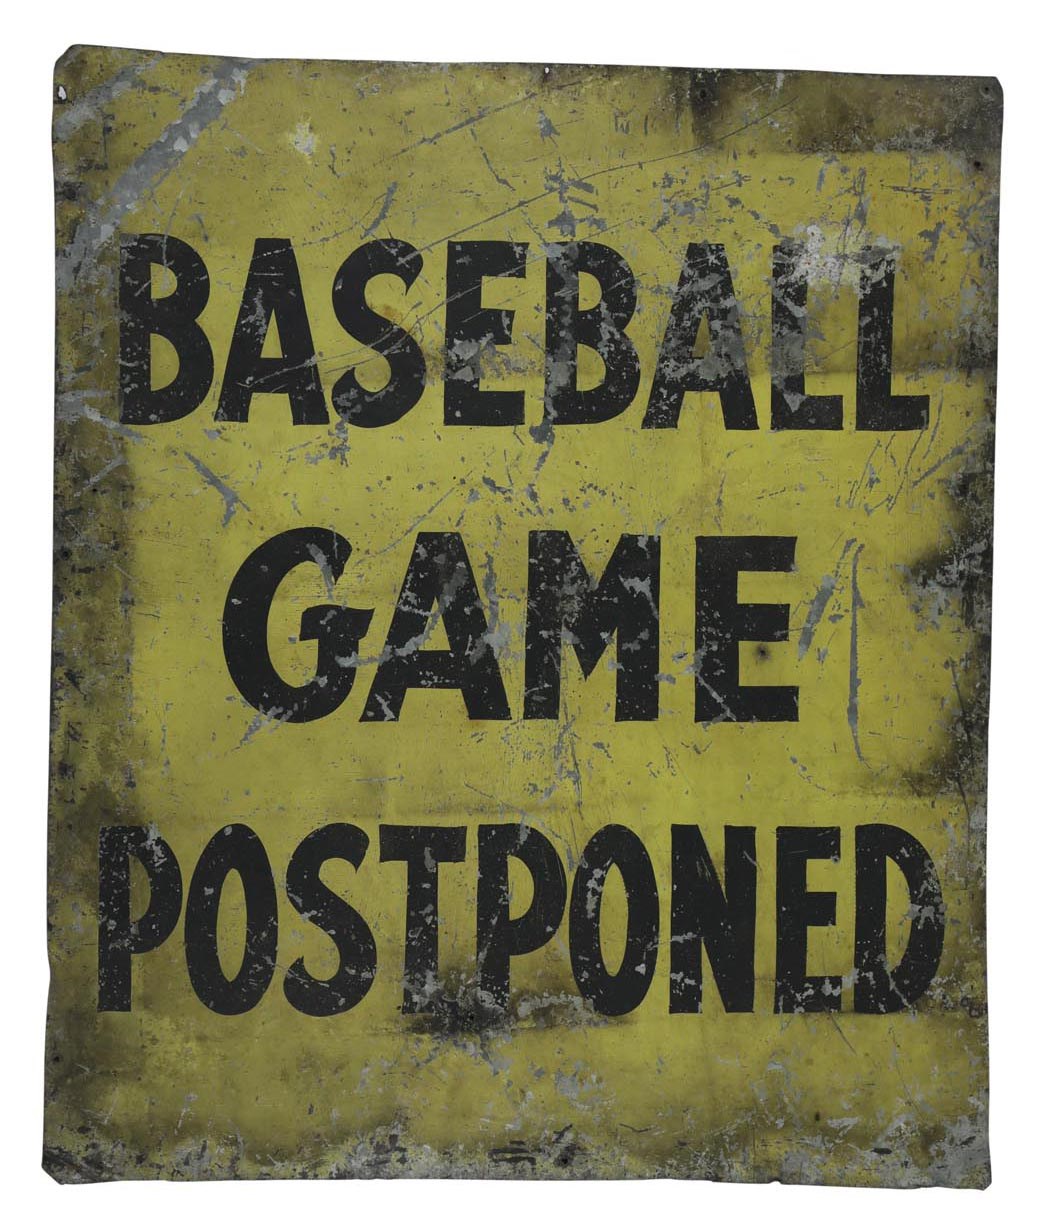 Stadium Artifacts - 1930s Baseball Game"Postponed" Folk Art Sign